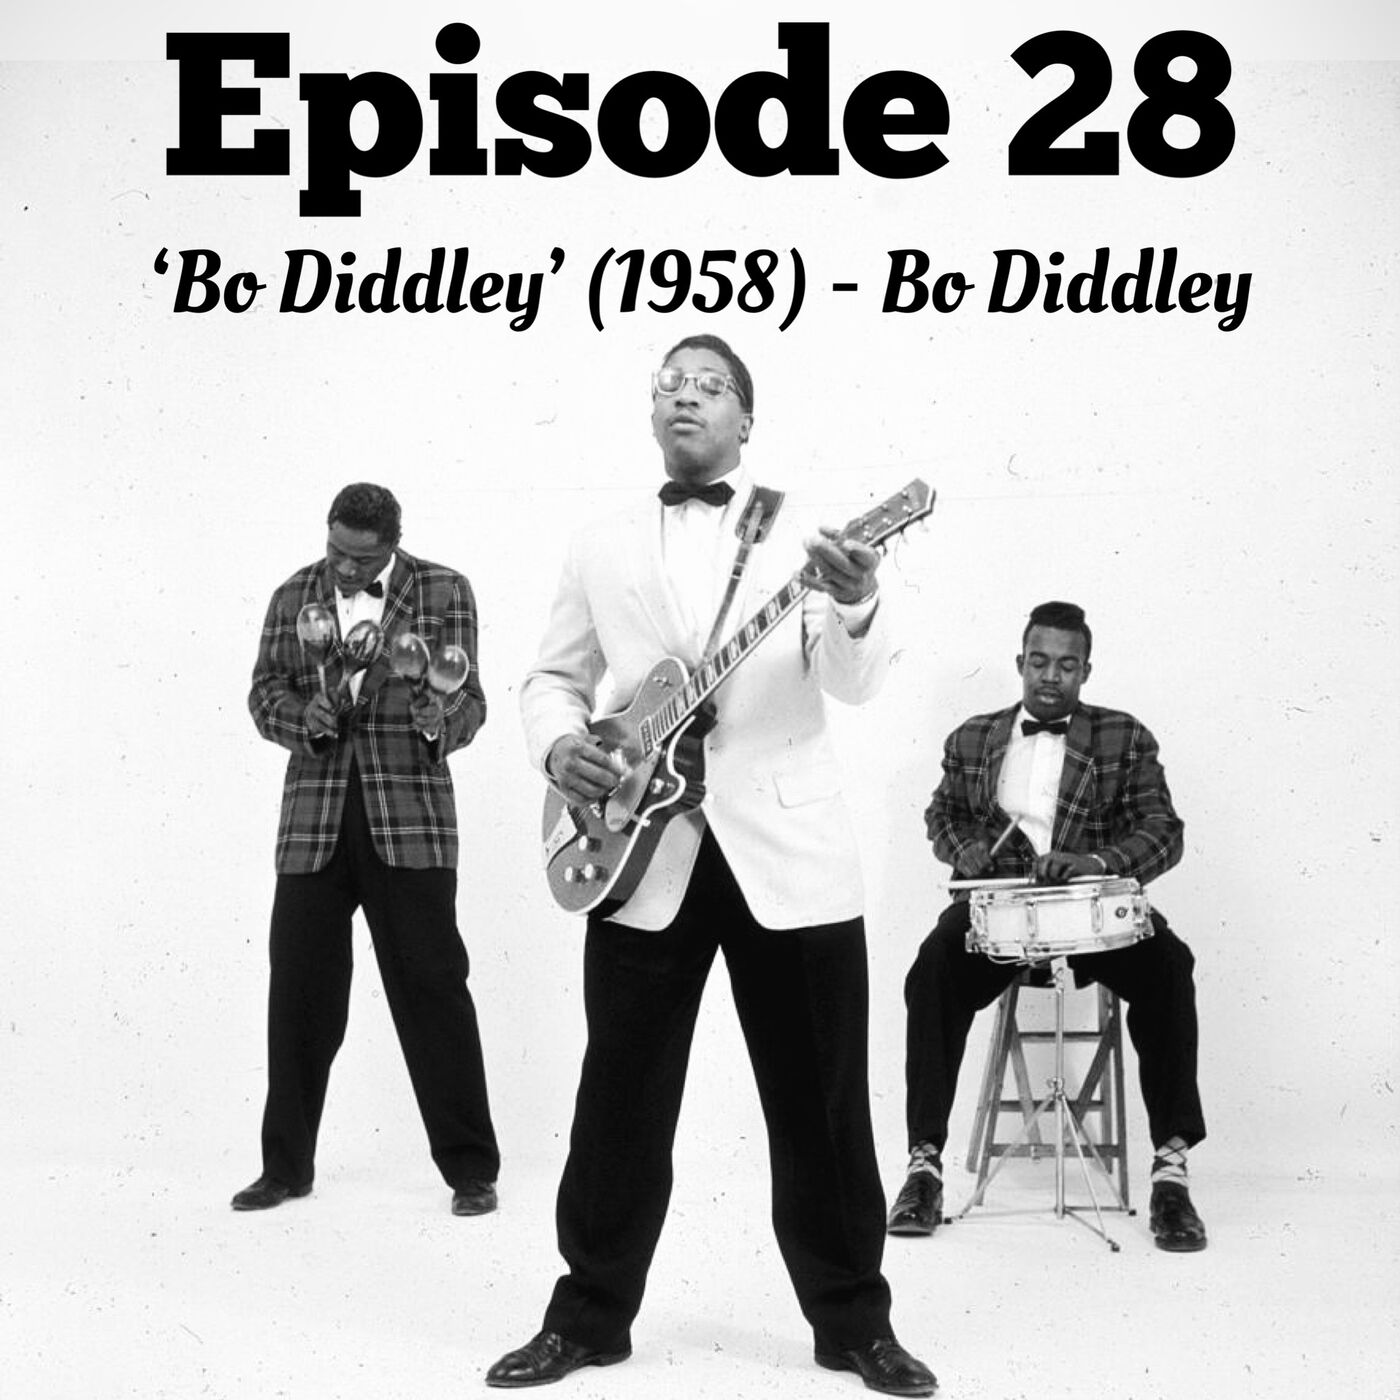 28. 'Bo Diddley' - Bo Diddley (1958)